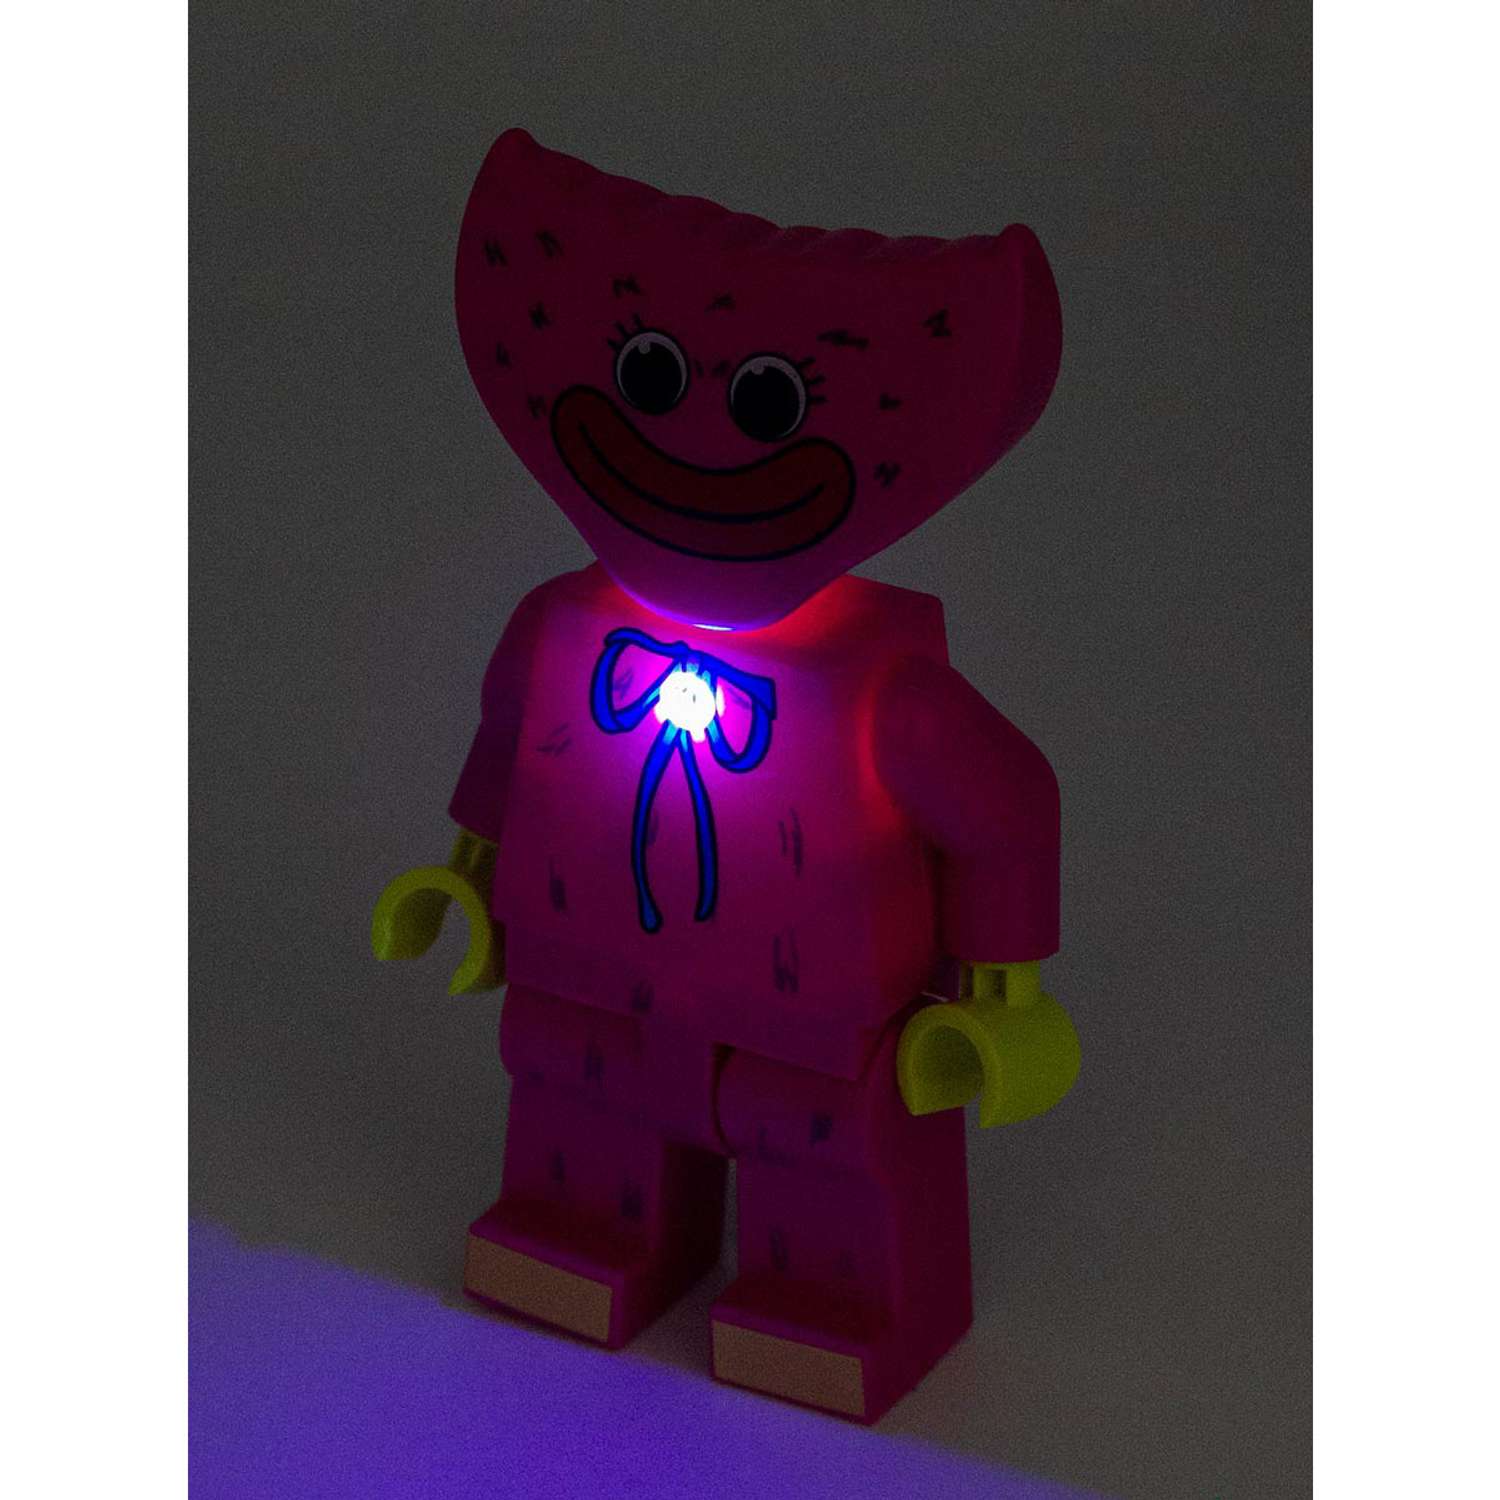 Фигурка Михи-Михи Кисси Мисси с подсветкой розовая 18 см - фото 7